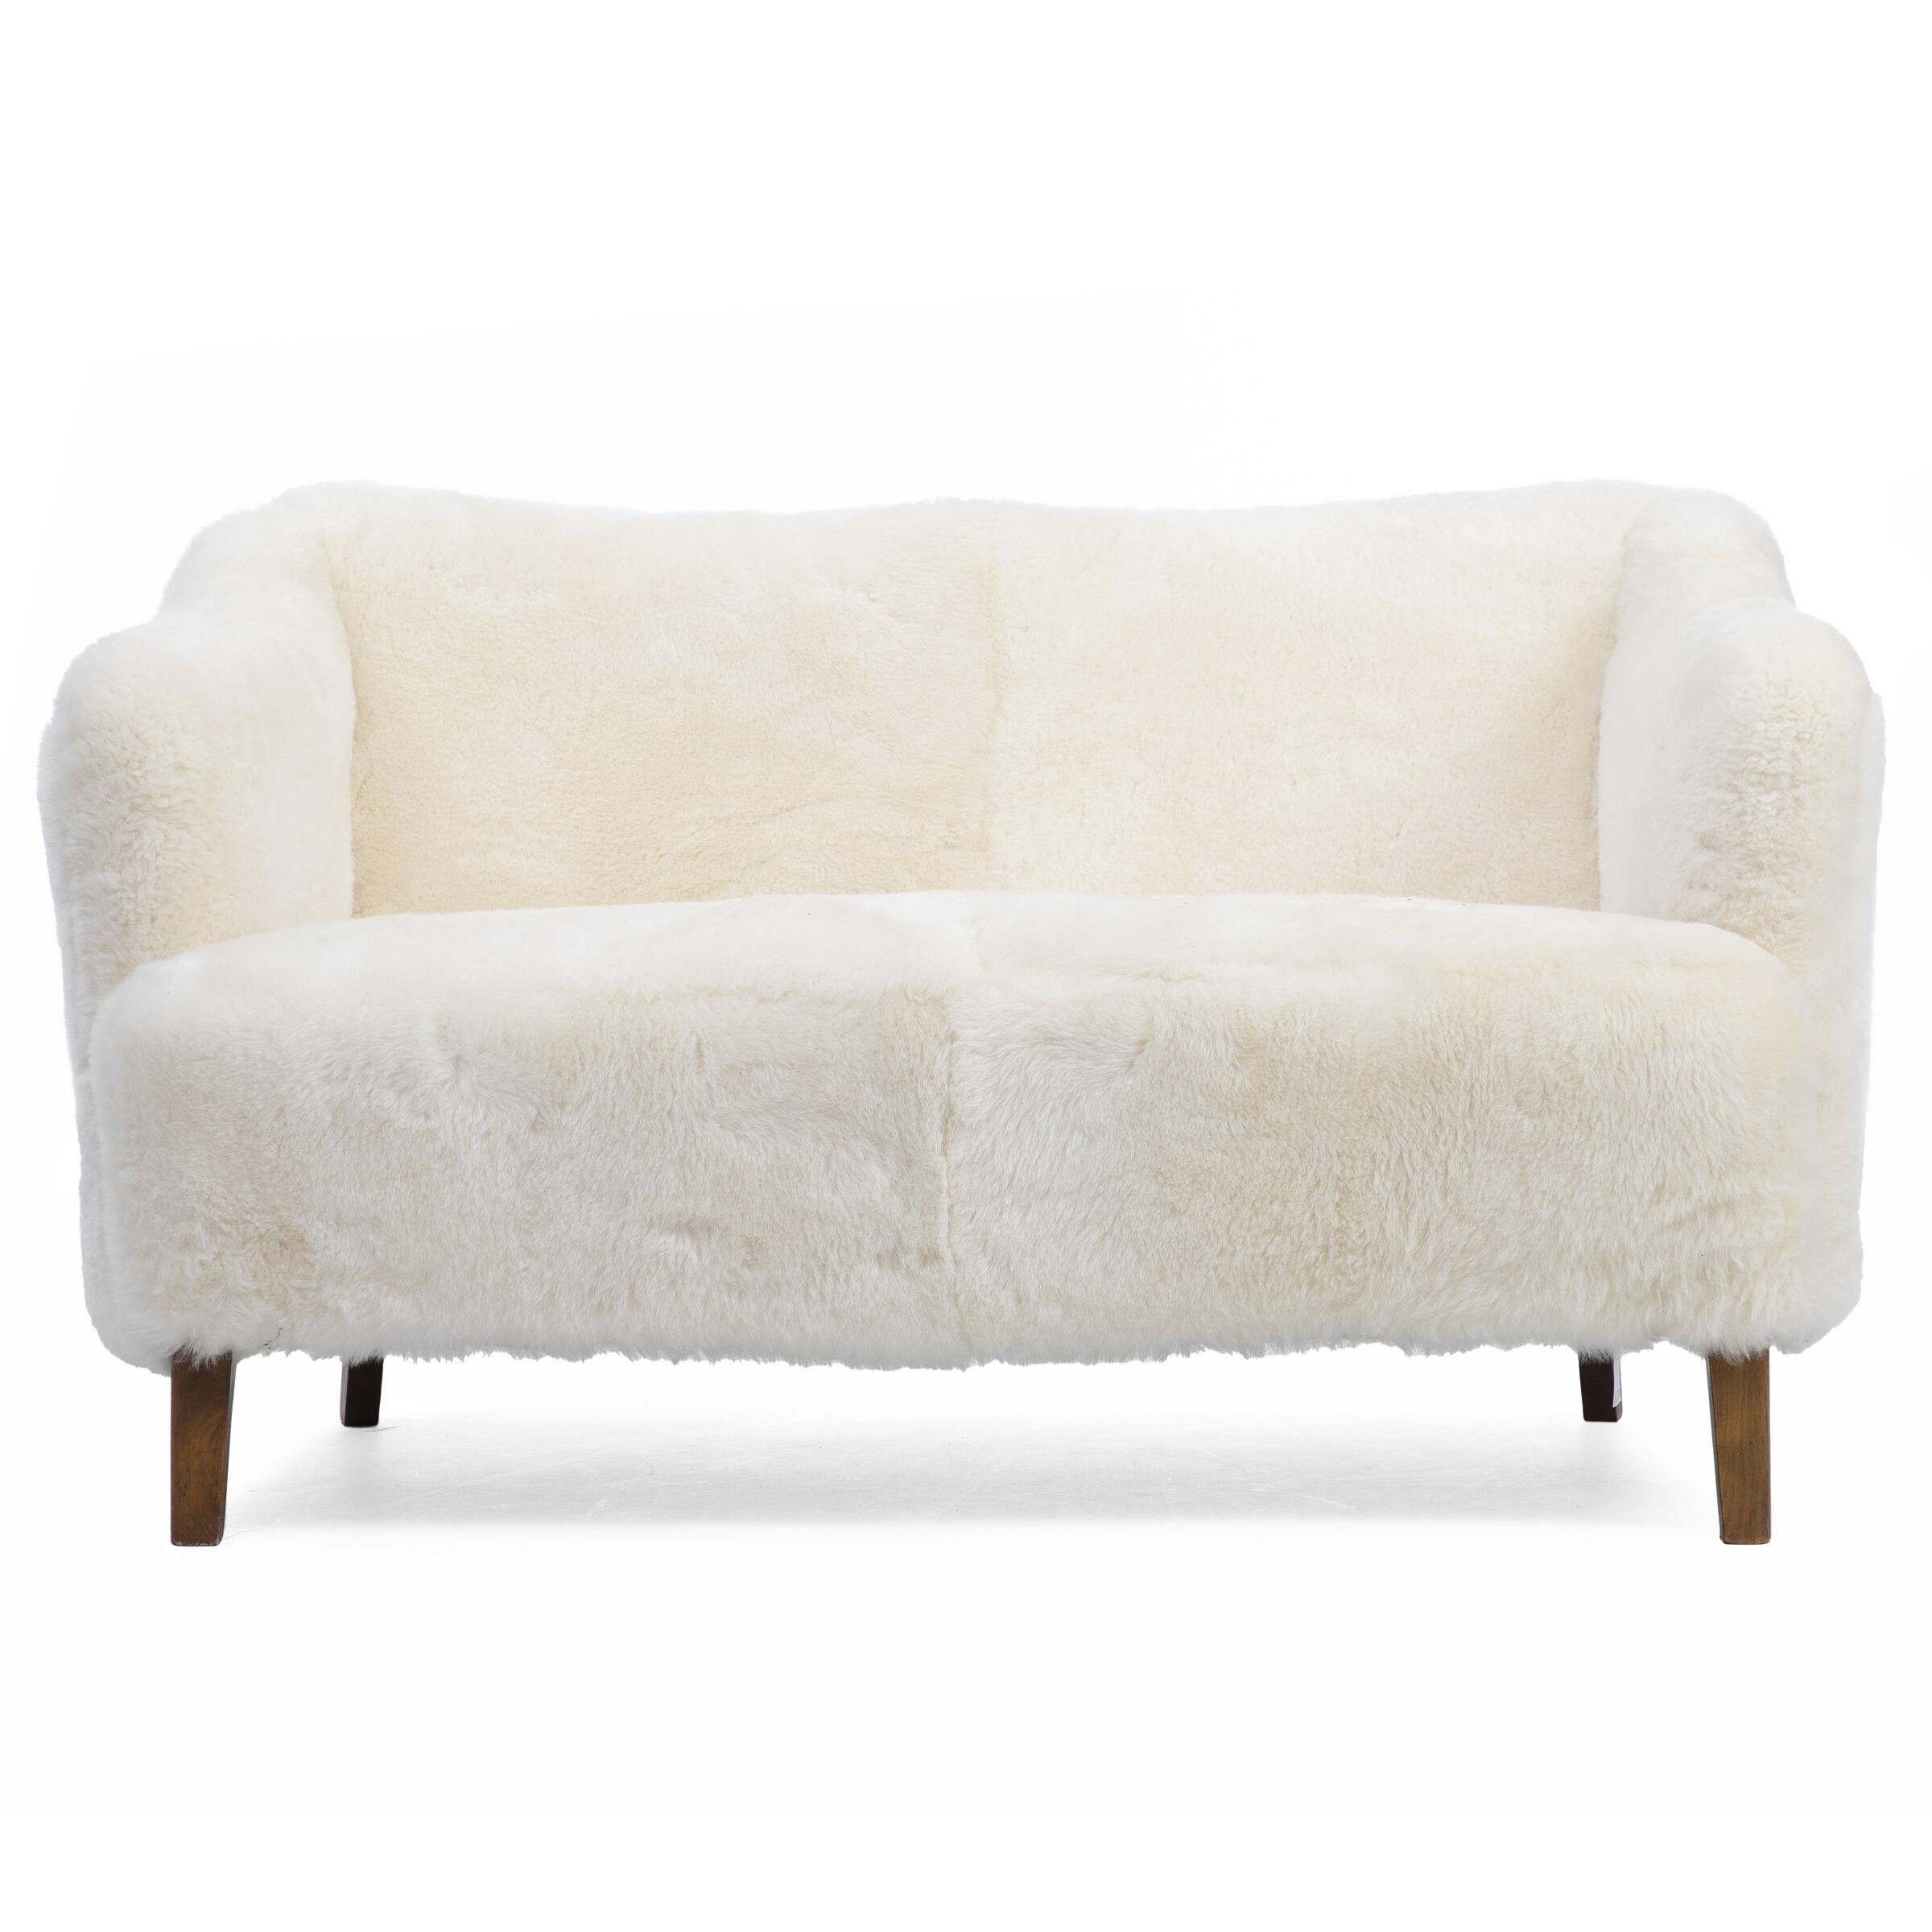 Zweisitziges Sofa mit Beinen aus gebeizter Buche. Gepolstert mit leichter und sehr weicher Lammwolle. Entworfen in den 1930-1940er Jahren. 

Maße: H. 77 cm. W. 135 cm. D. 84 cm.